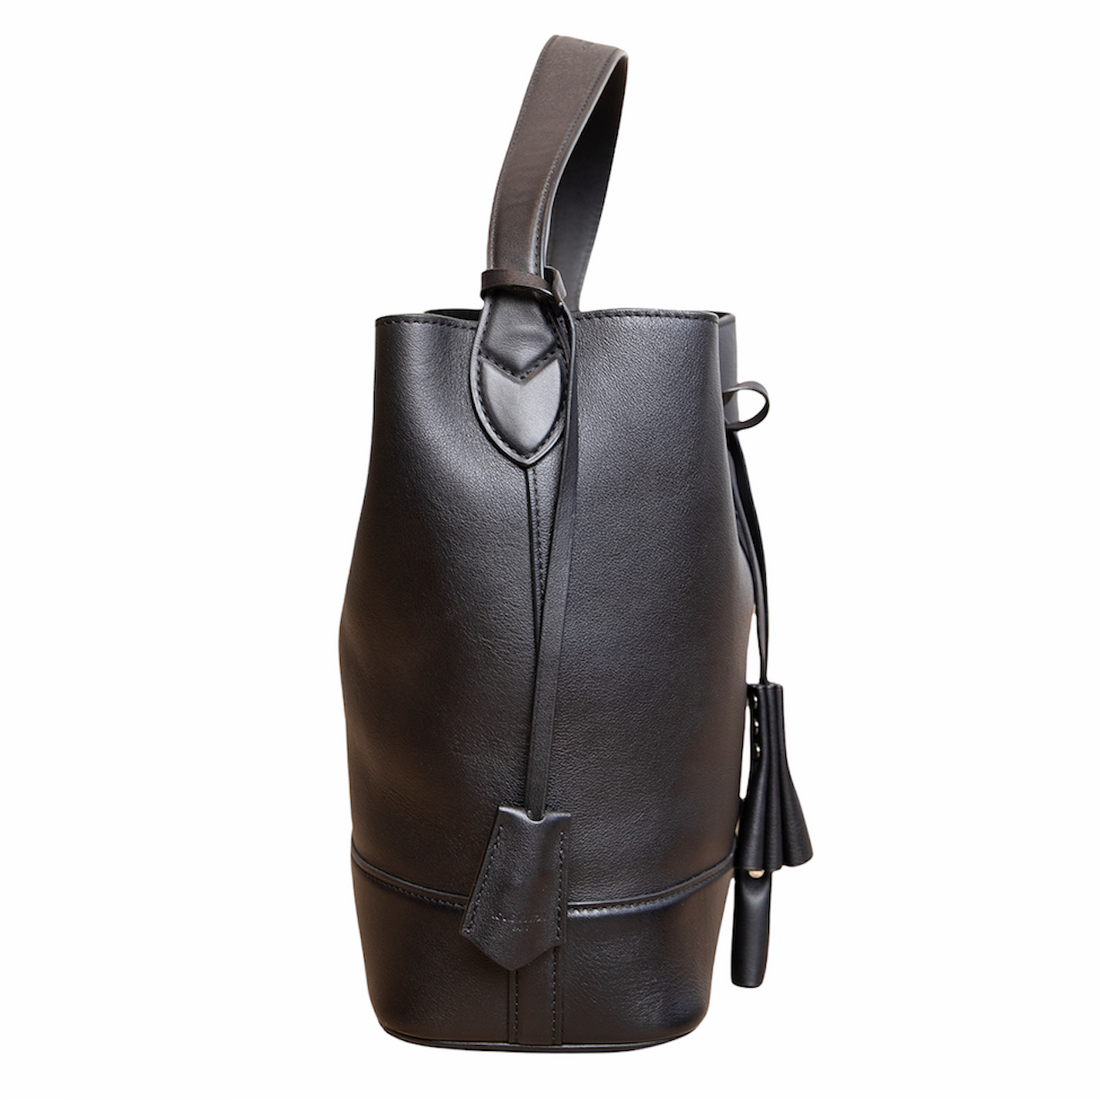 Louis Vuitton Bucket Bag aus weichem Leder